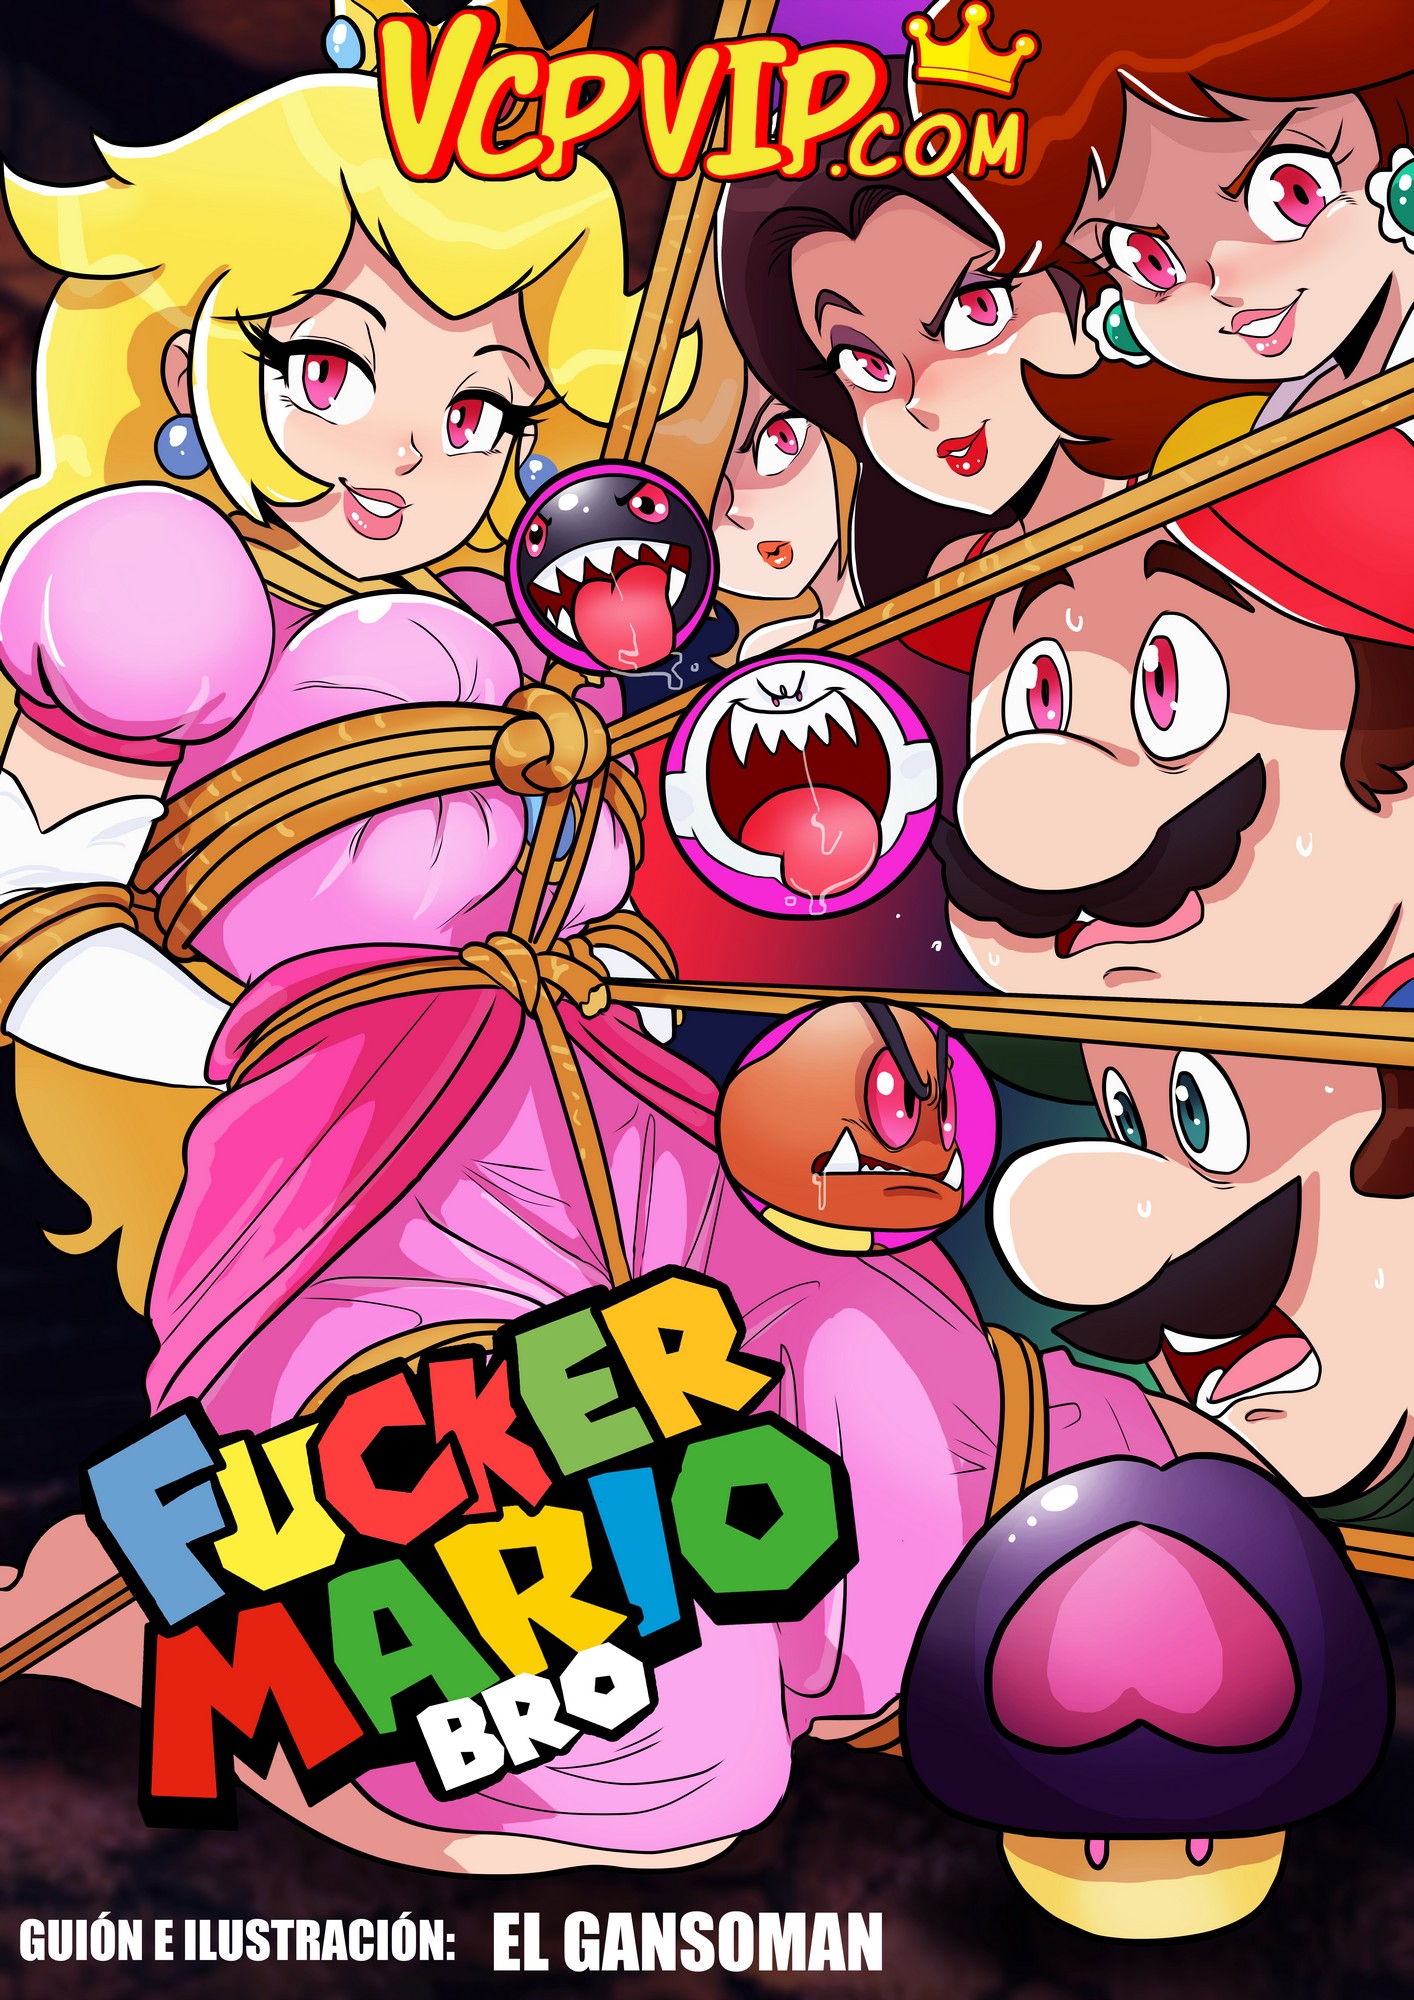 Mario anime porn comics